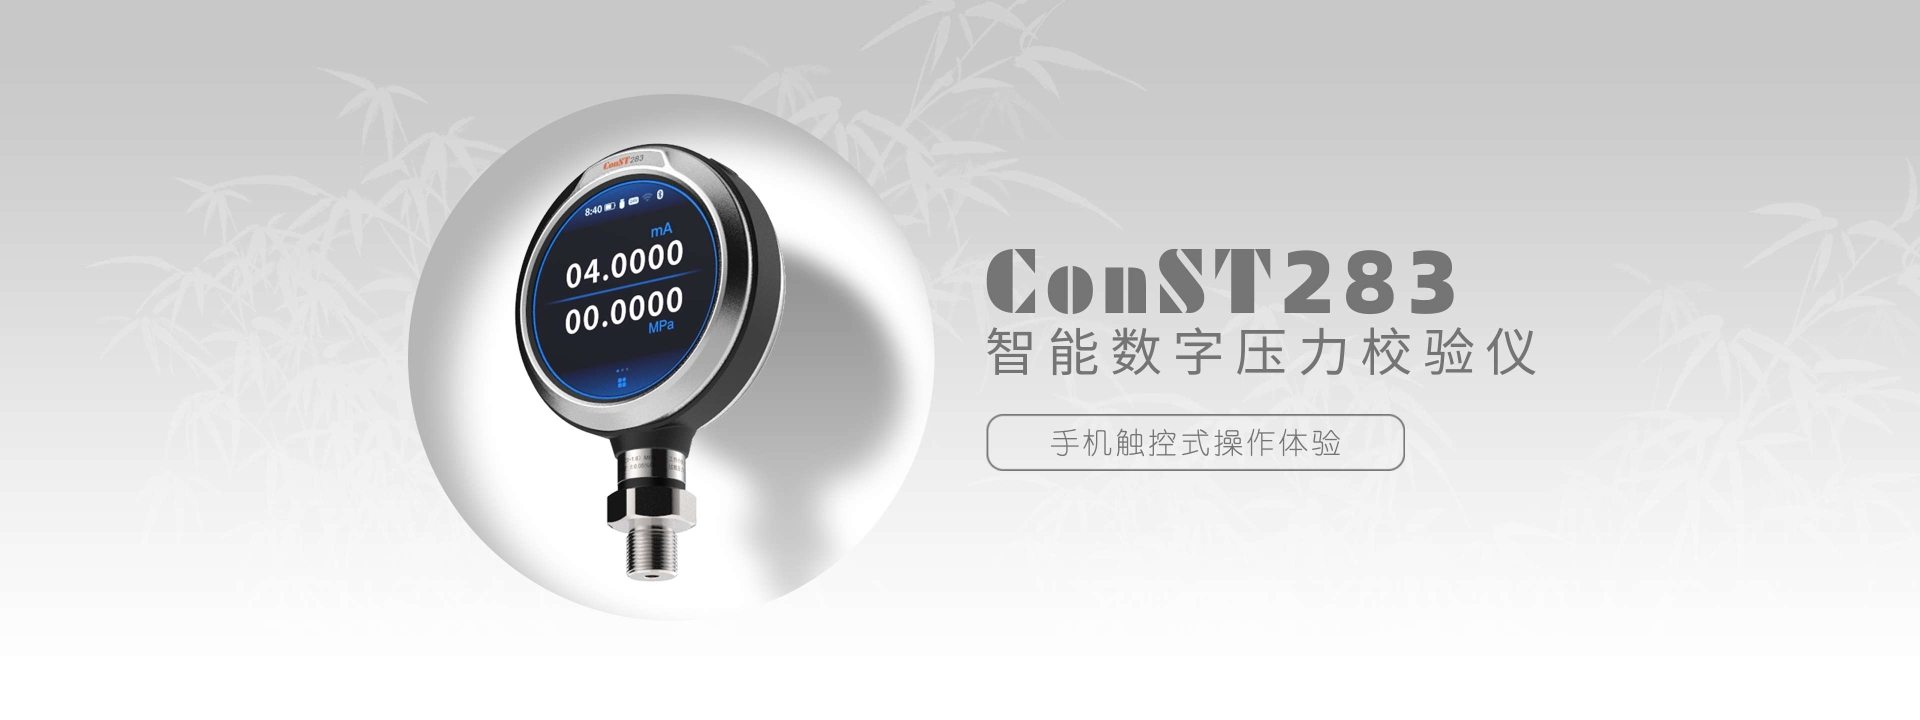 ConST283智能數字壓力校驗儀